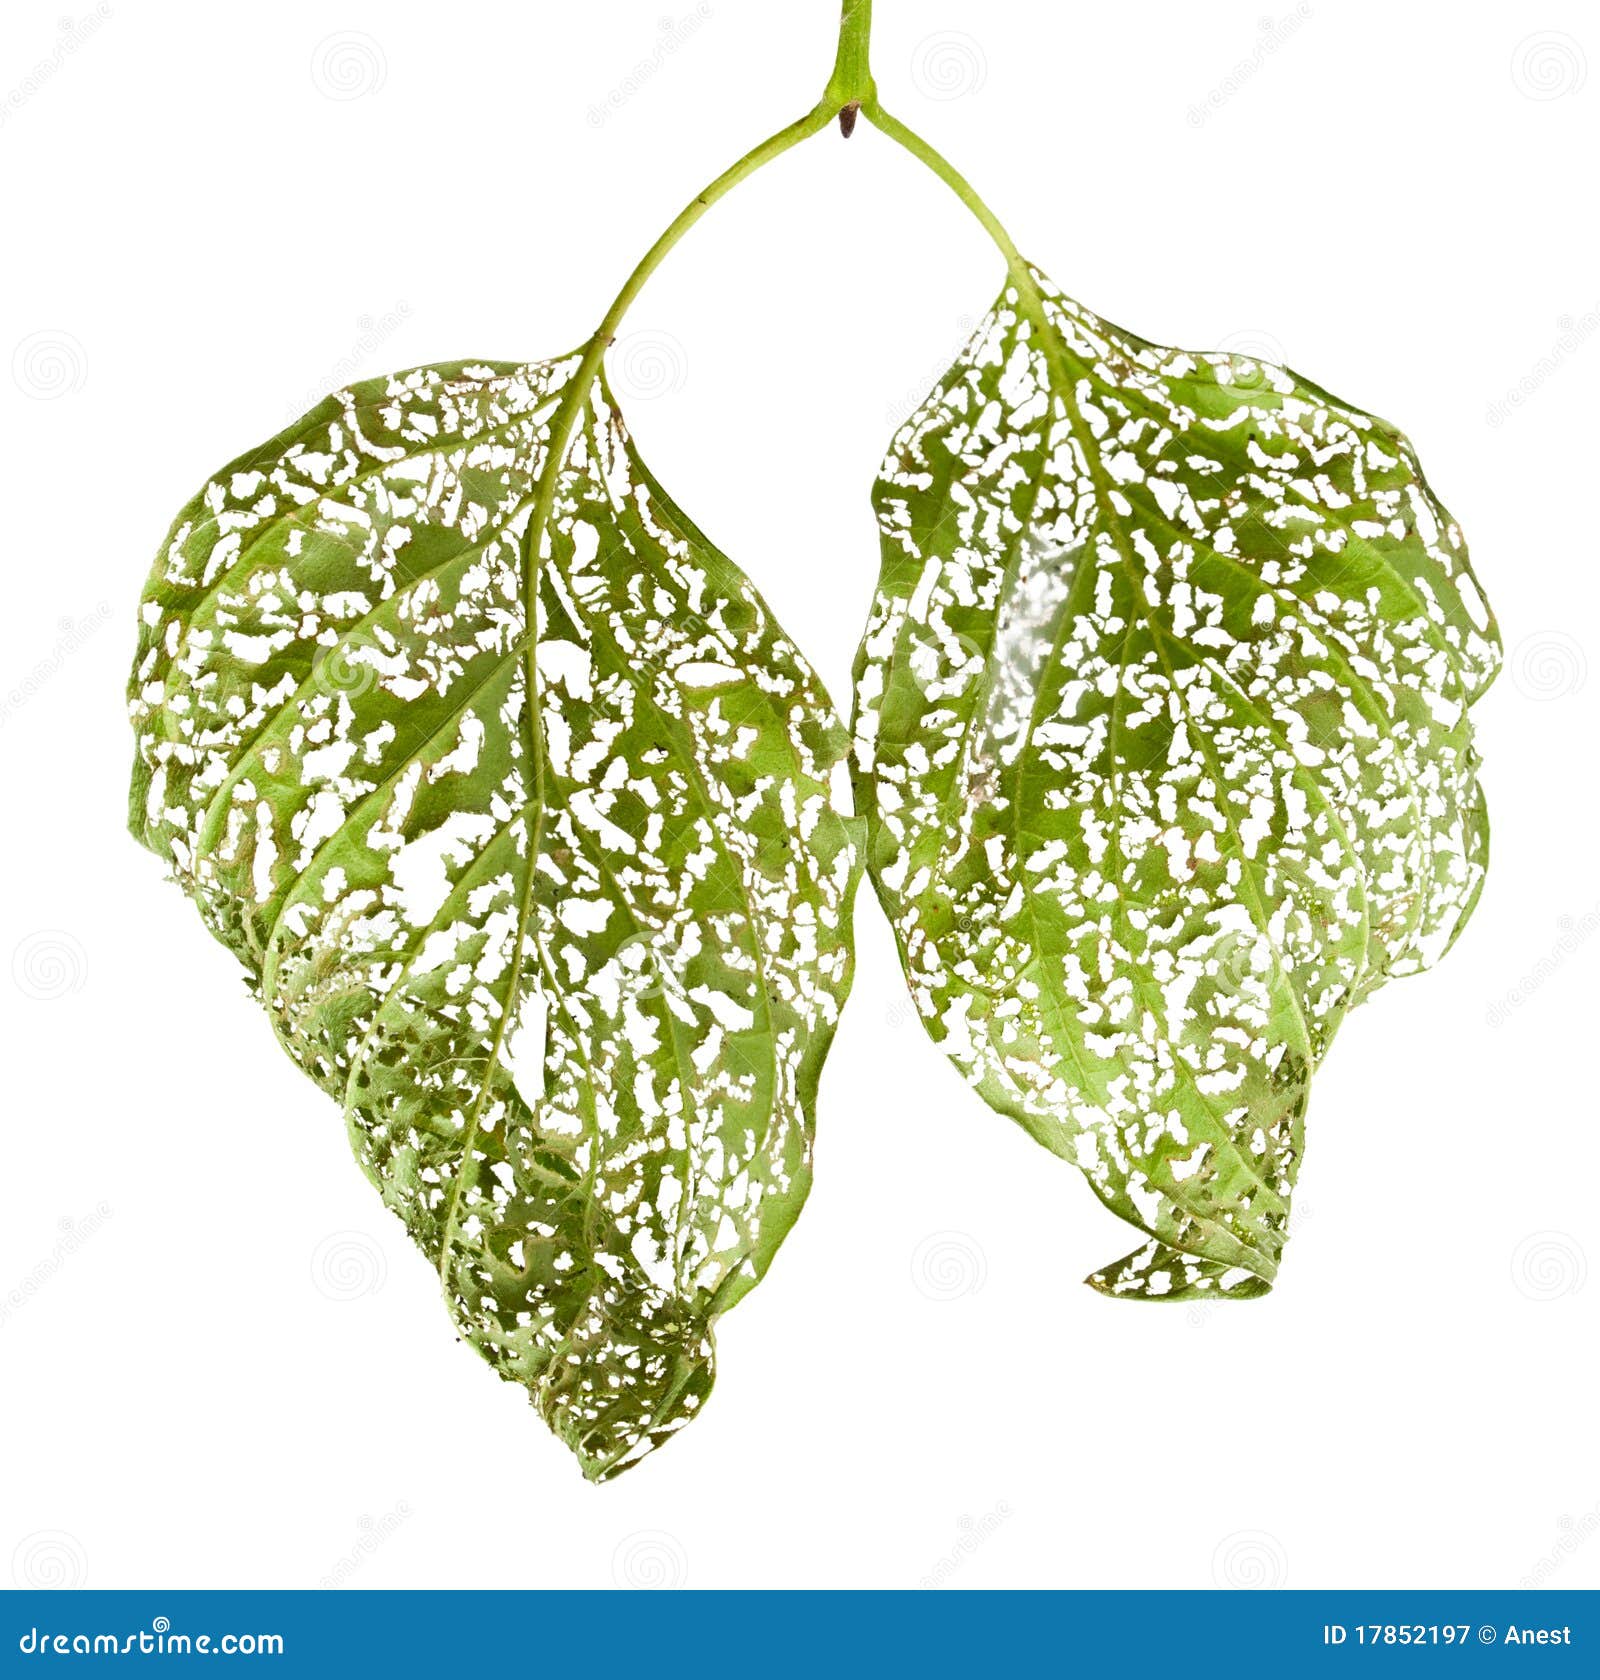 macro of leaves chewed by vermin